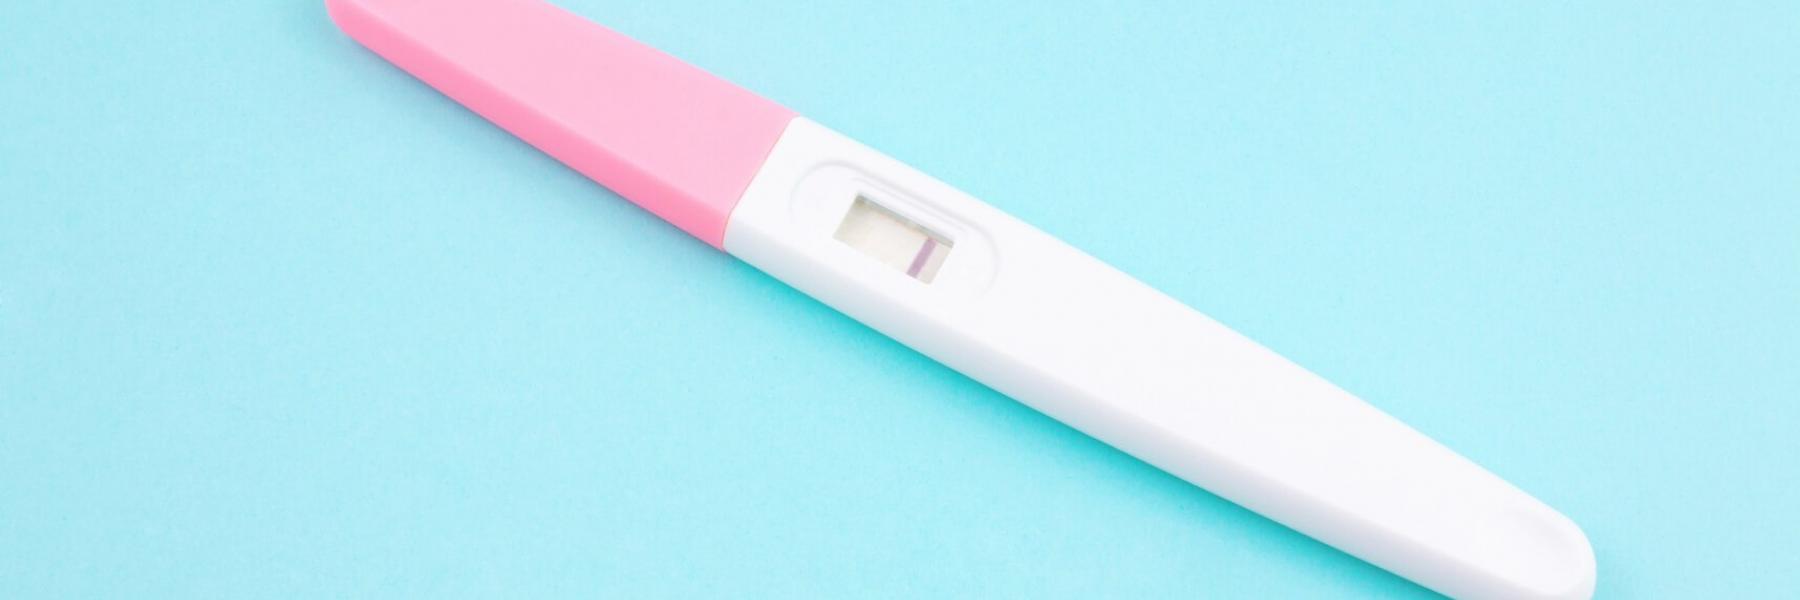 هل يوفر اختبار الحمل المنزلى نتائج موثوقة ليلا؟